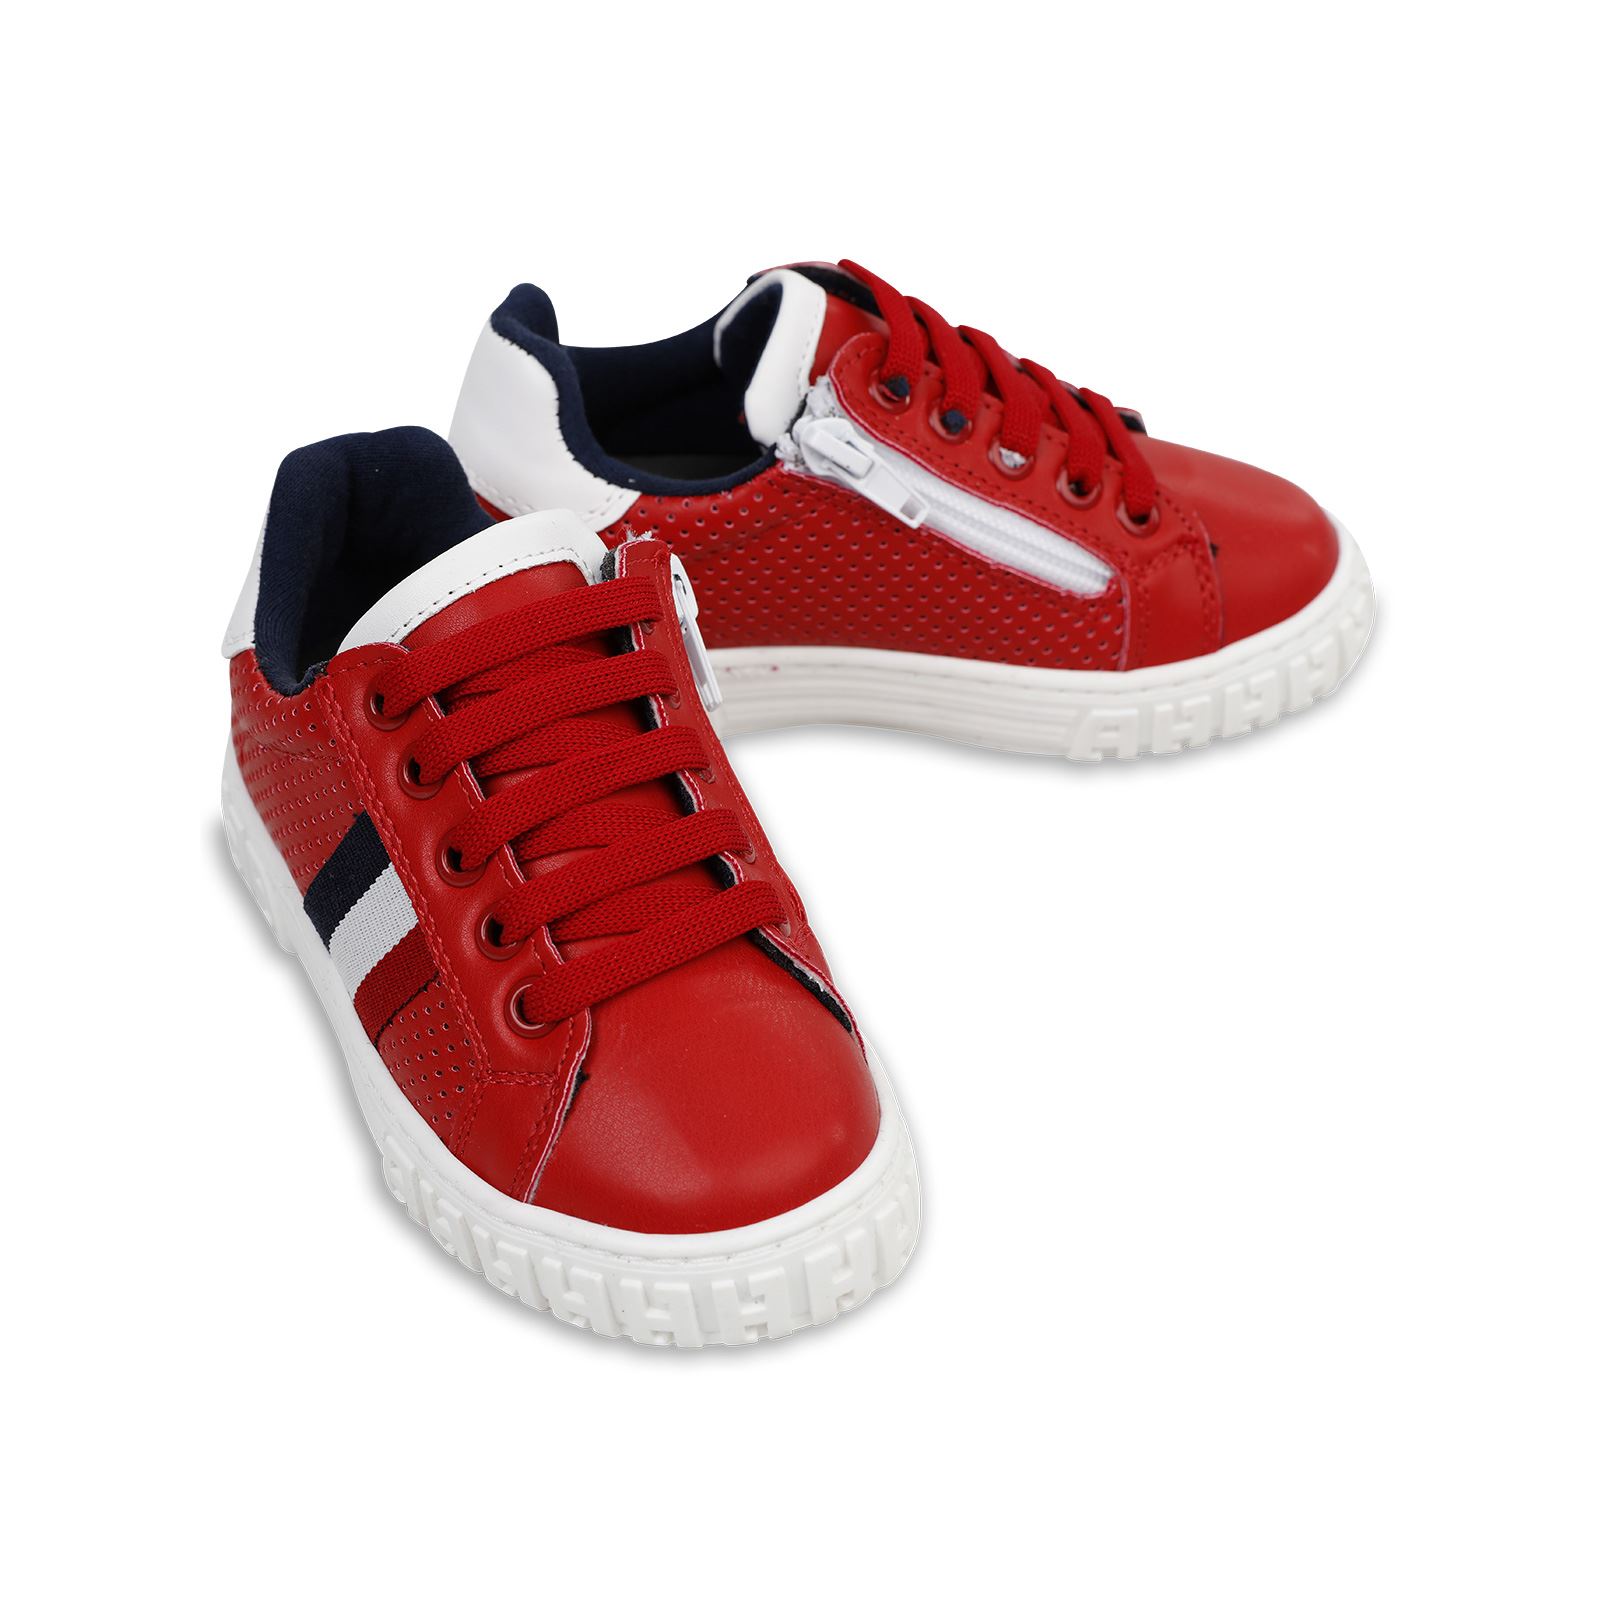 Harli Erkek Çocuk Spor Ayakkabı 31-35 Numara Kırmızı